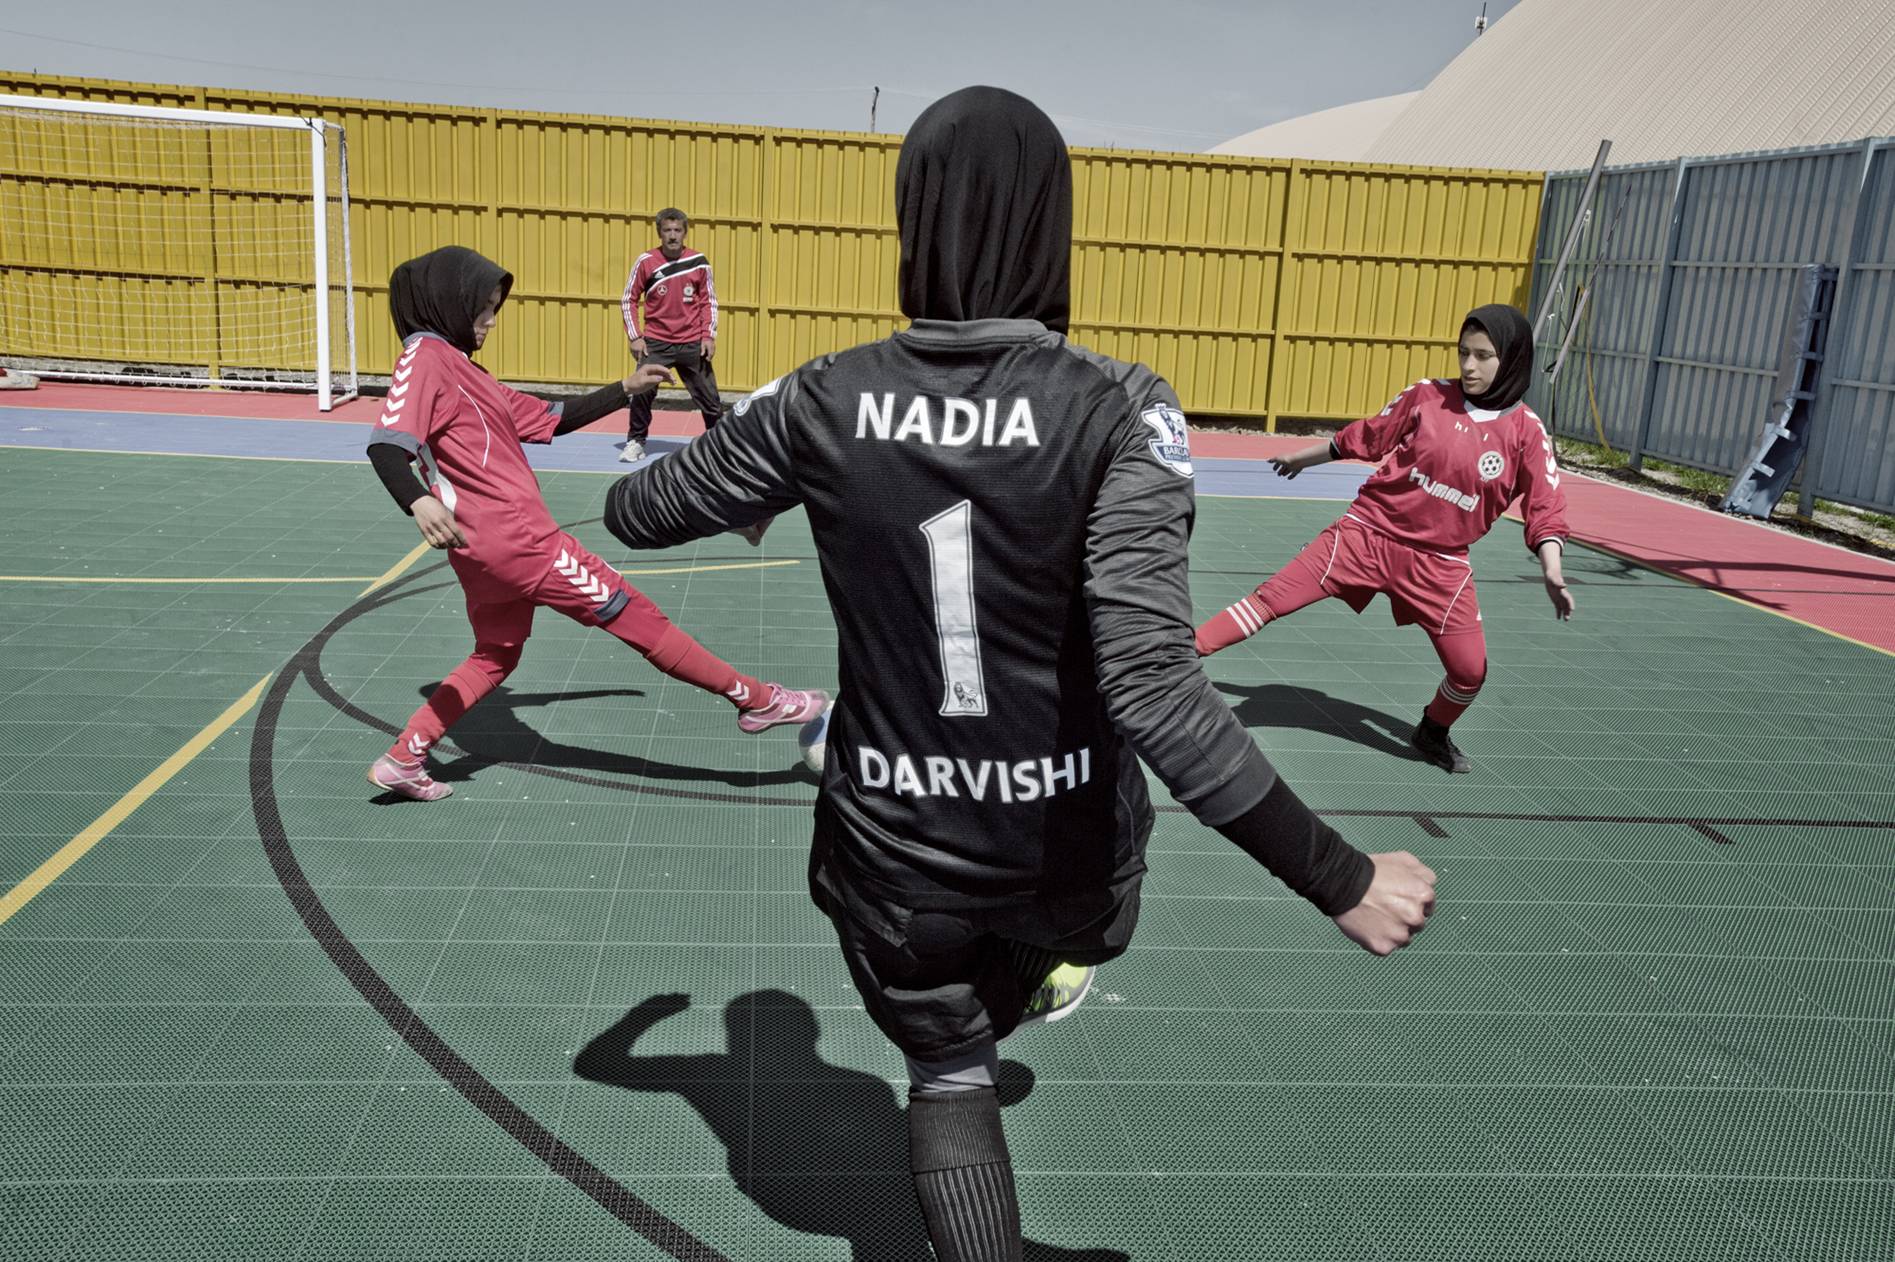 <p>La mayoría de las jugadoras de fútbol son estudiantes de secundaria o universitarias y pertenecen a familias de clase social media y alta. En Kabul existen 16 equipos de fútbol y en 2013 se celebró el primer campeonato femenino. La entrada al campo solo estuvo permitida a los familiares de las futbolistas.</p>